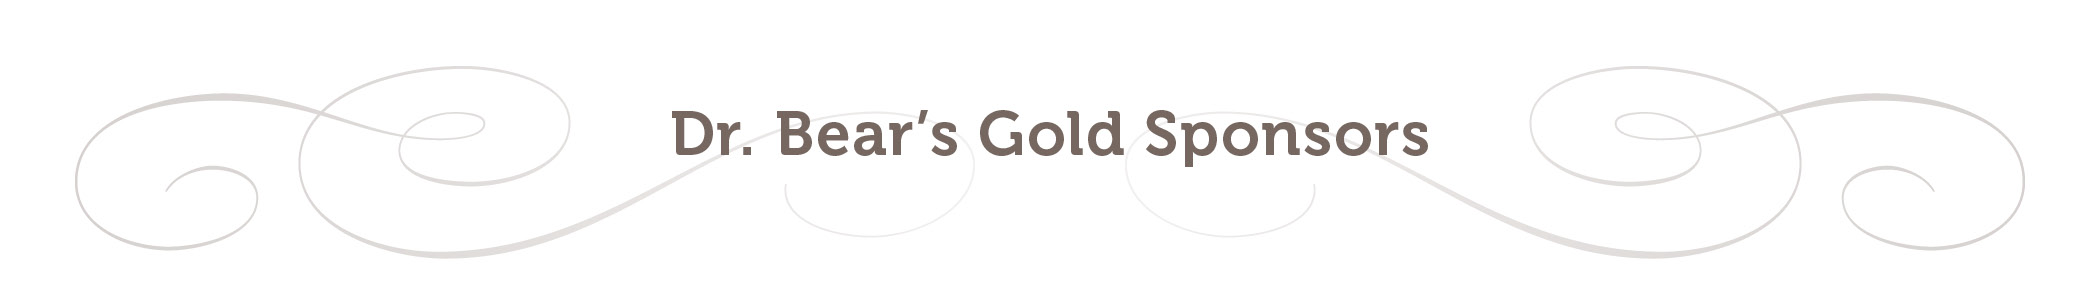 Gold S Sponsors